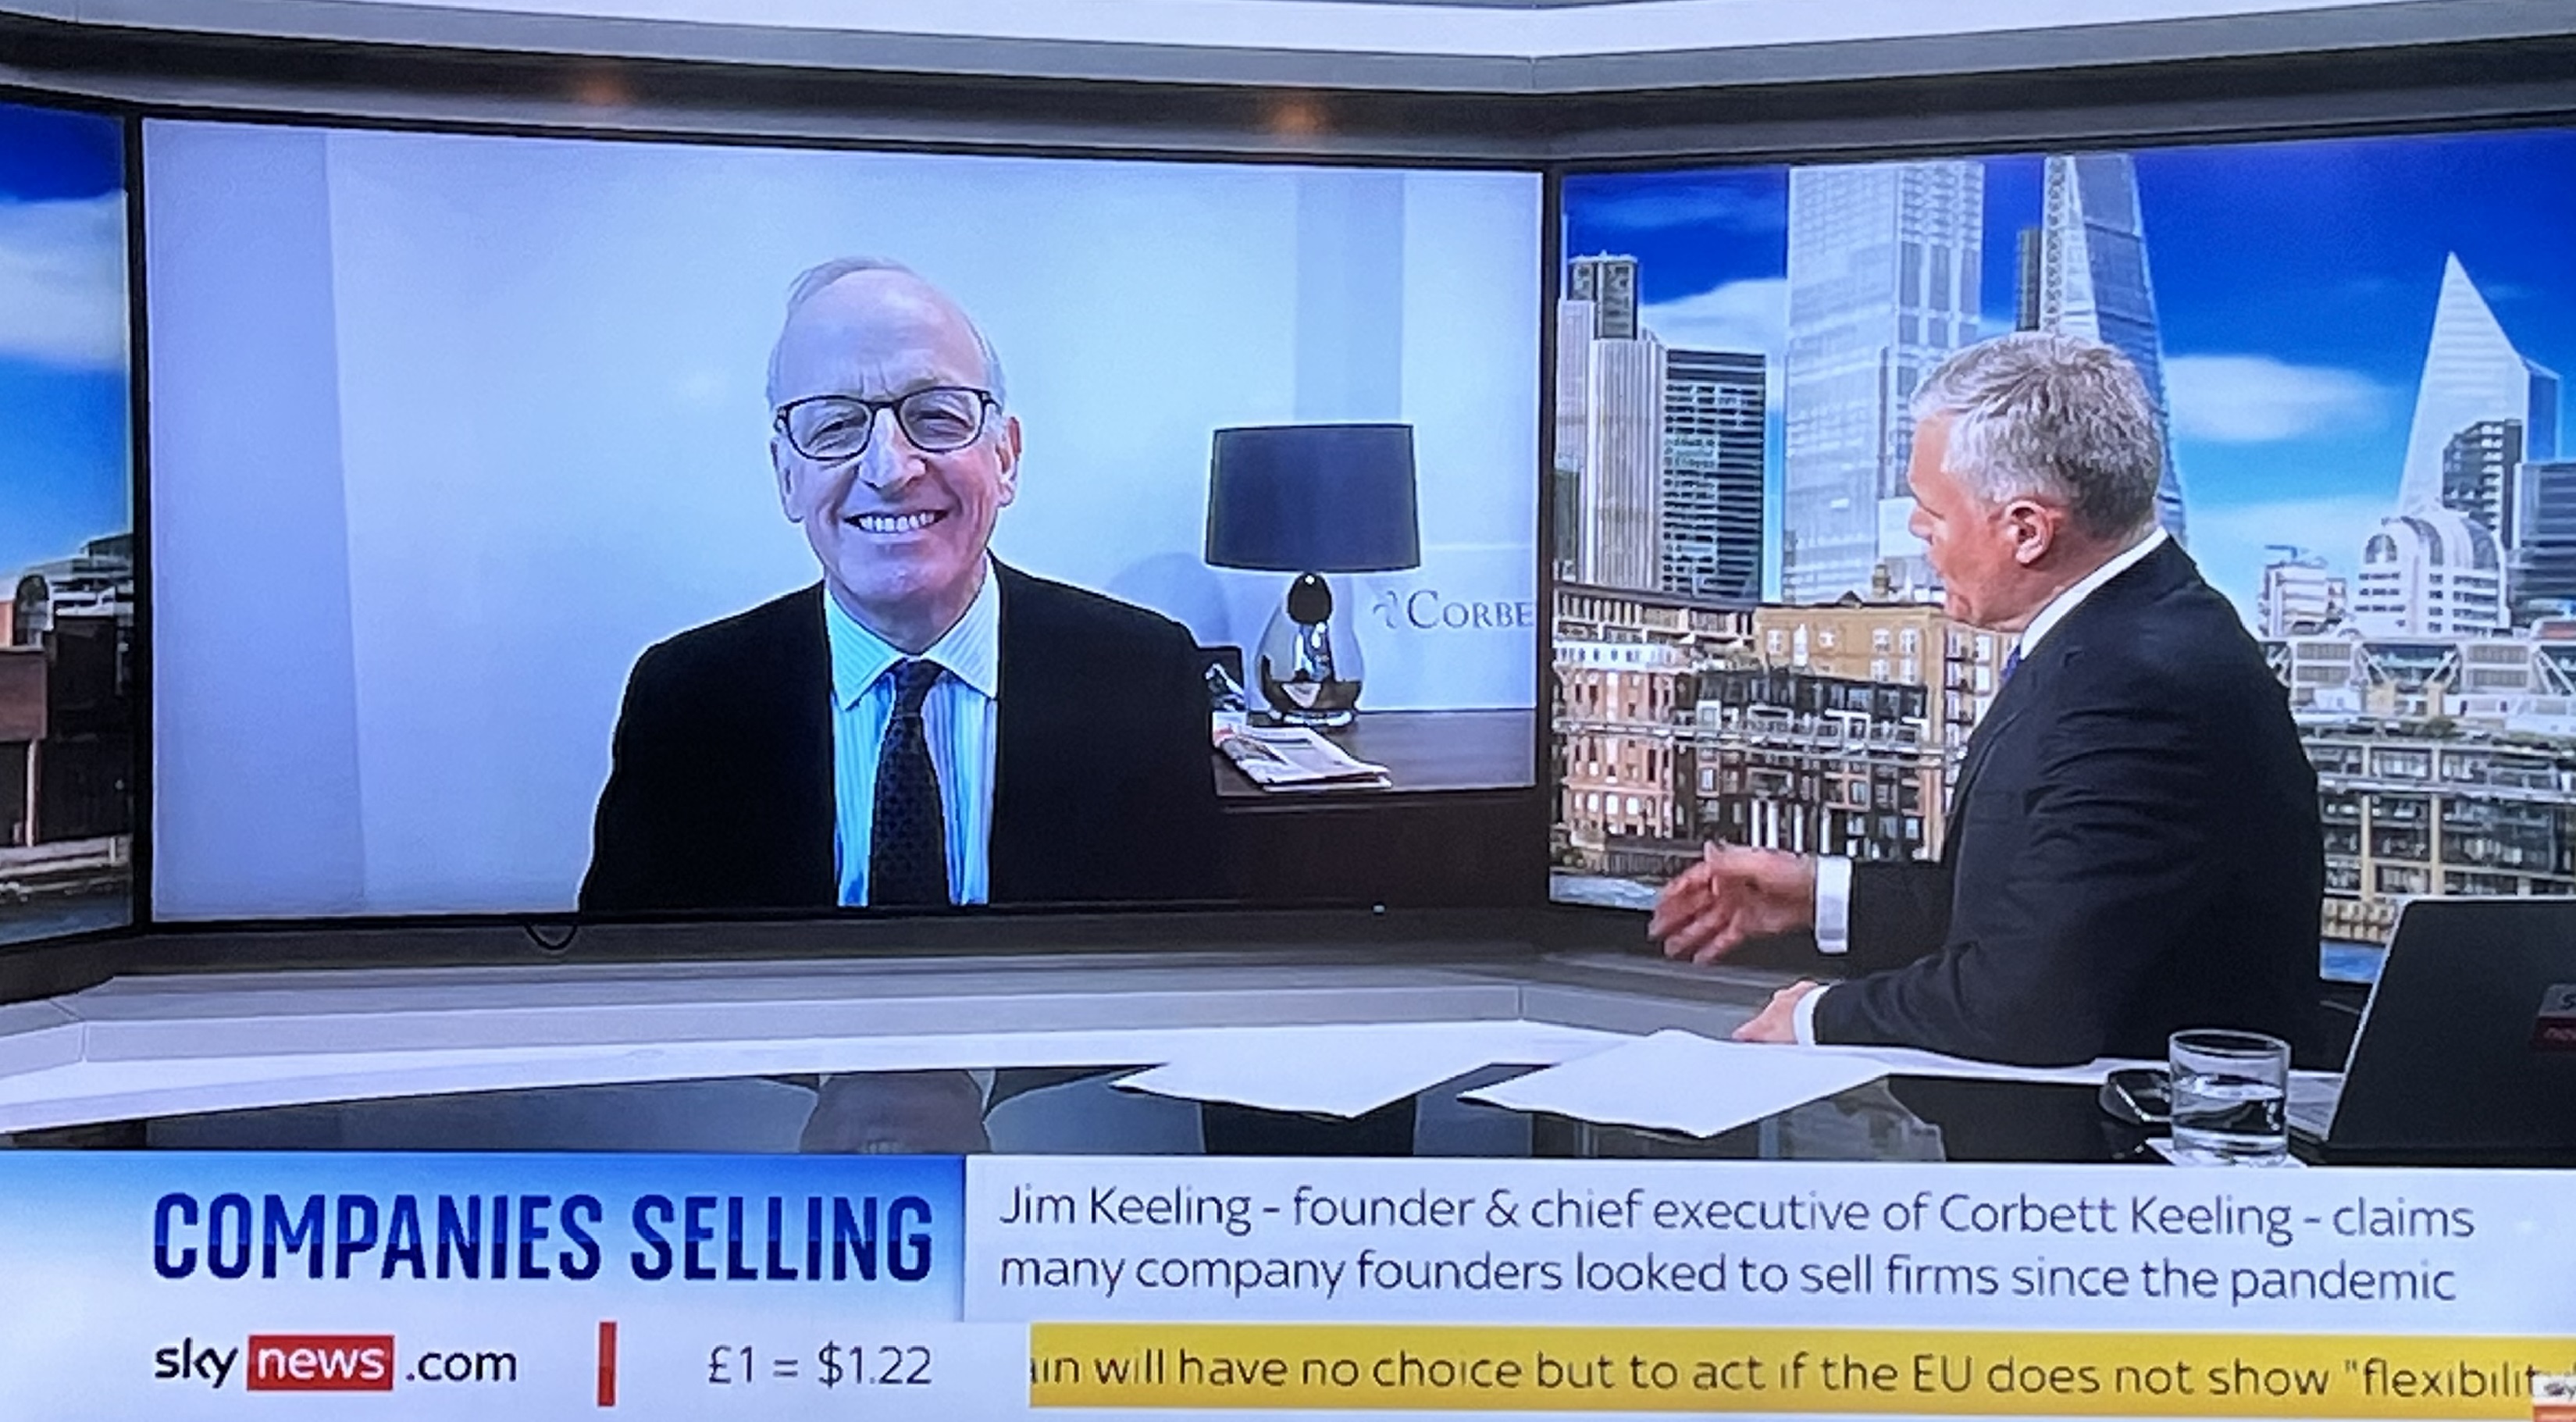 Jim Keeling, CEO of Corbett Keeling Corporate Finance interviewed by Ian King, Sky News